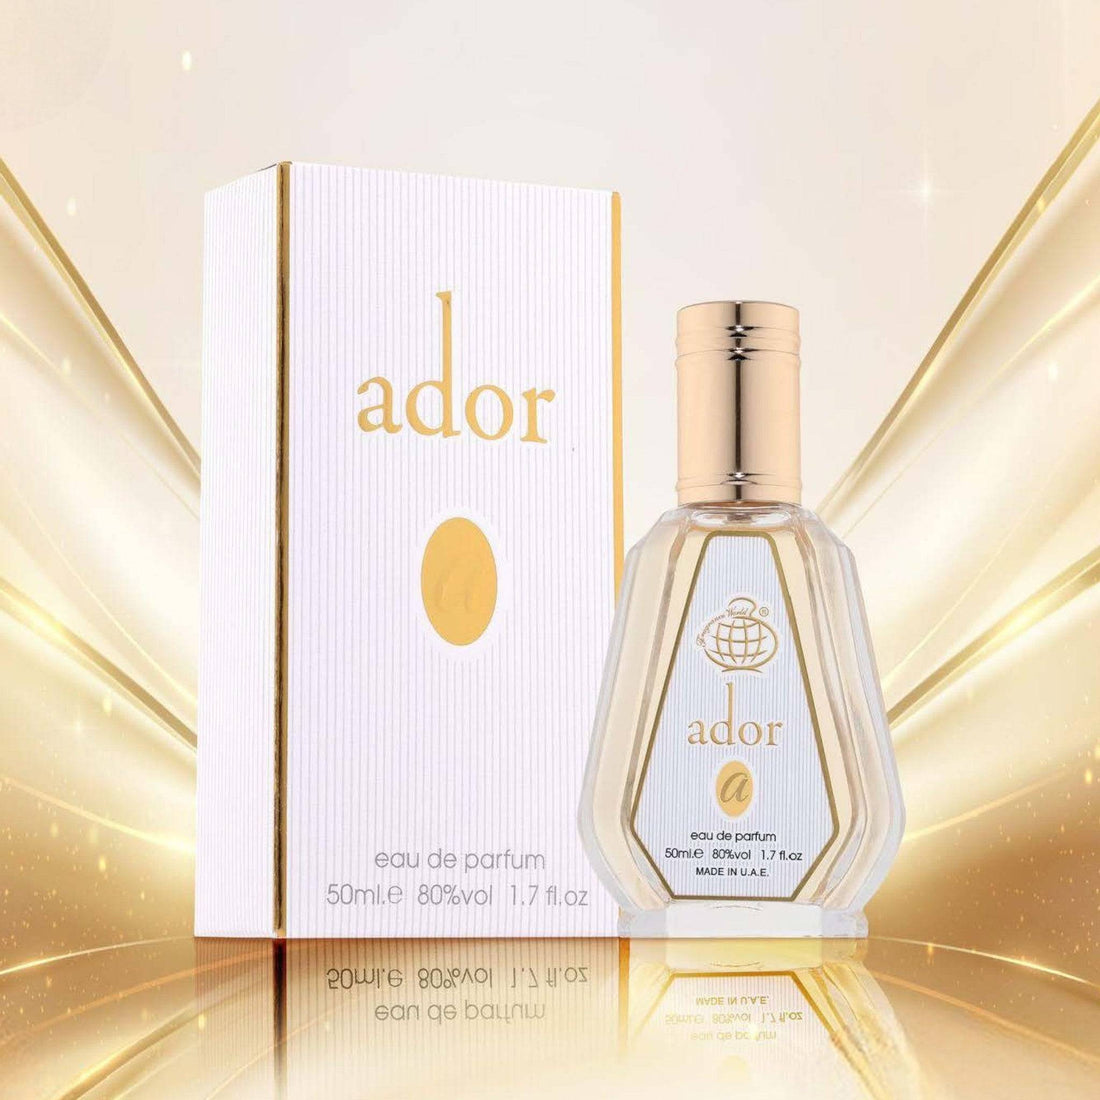 Sleek bottle of Ador Eau De Parfum by Fragrance World, exuding luxury with its golden hue and elegant design.